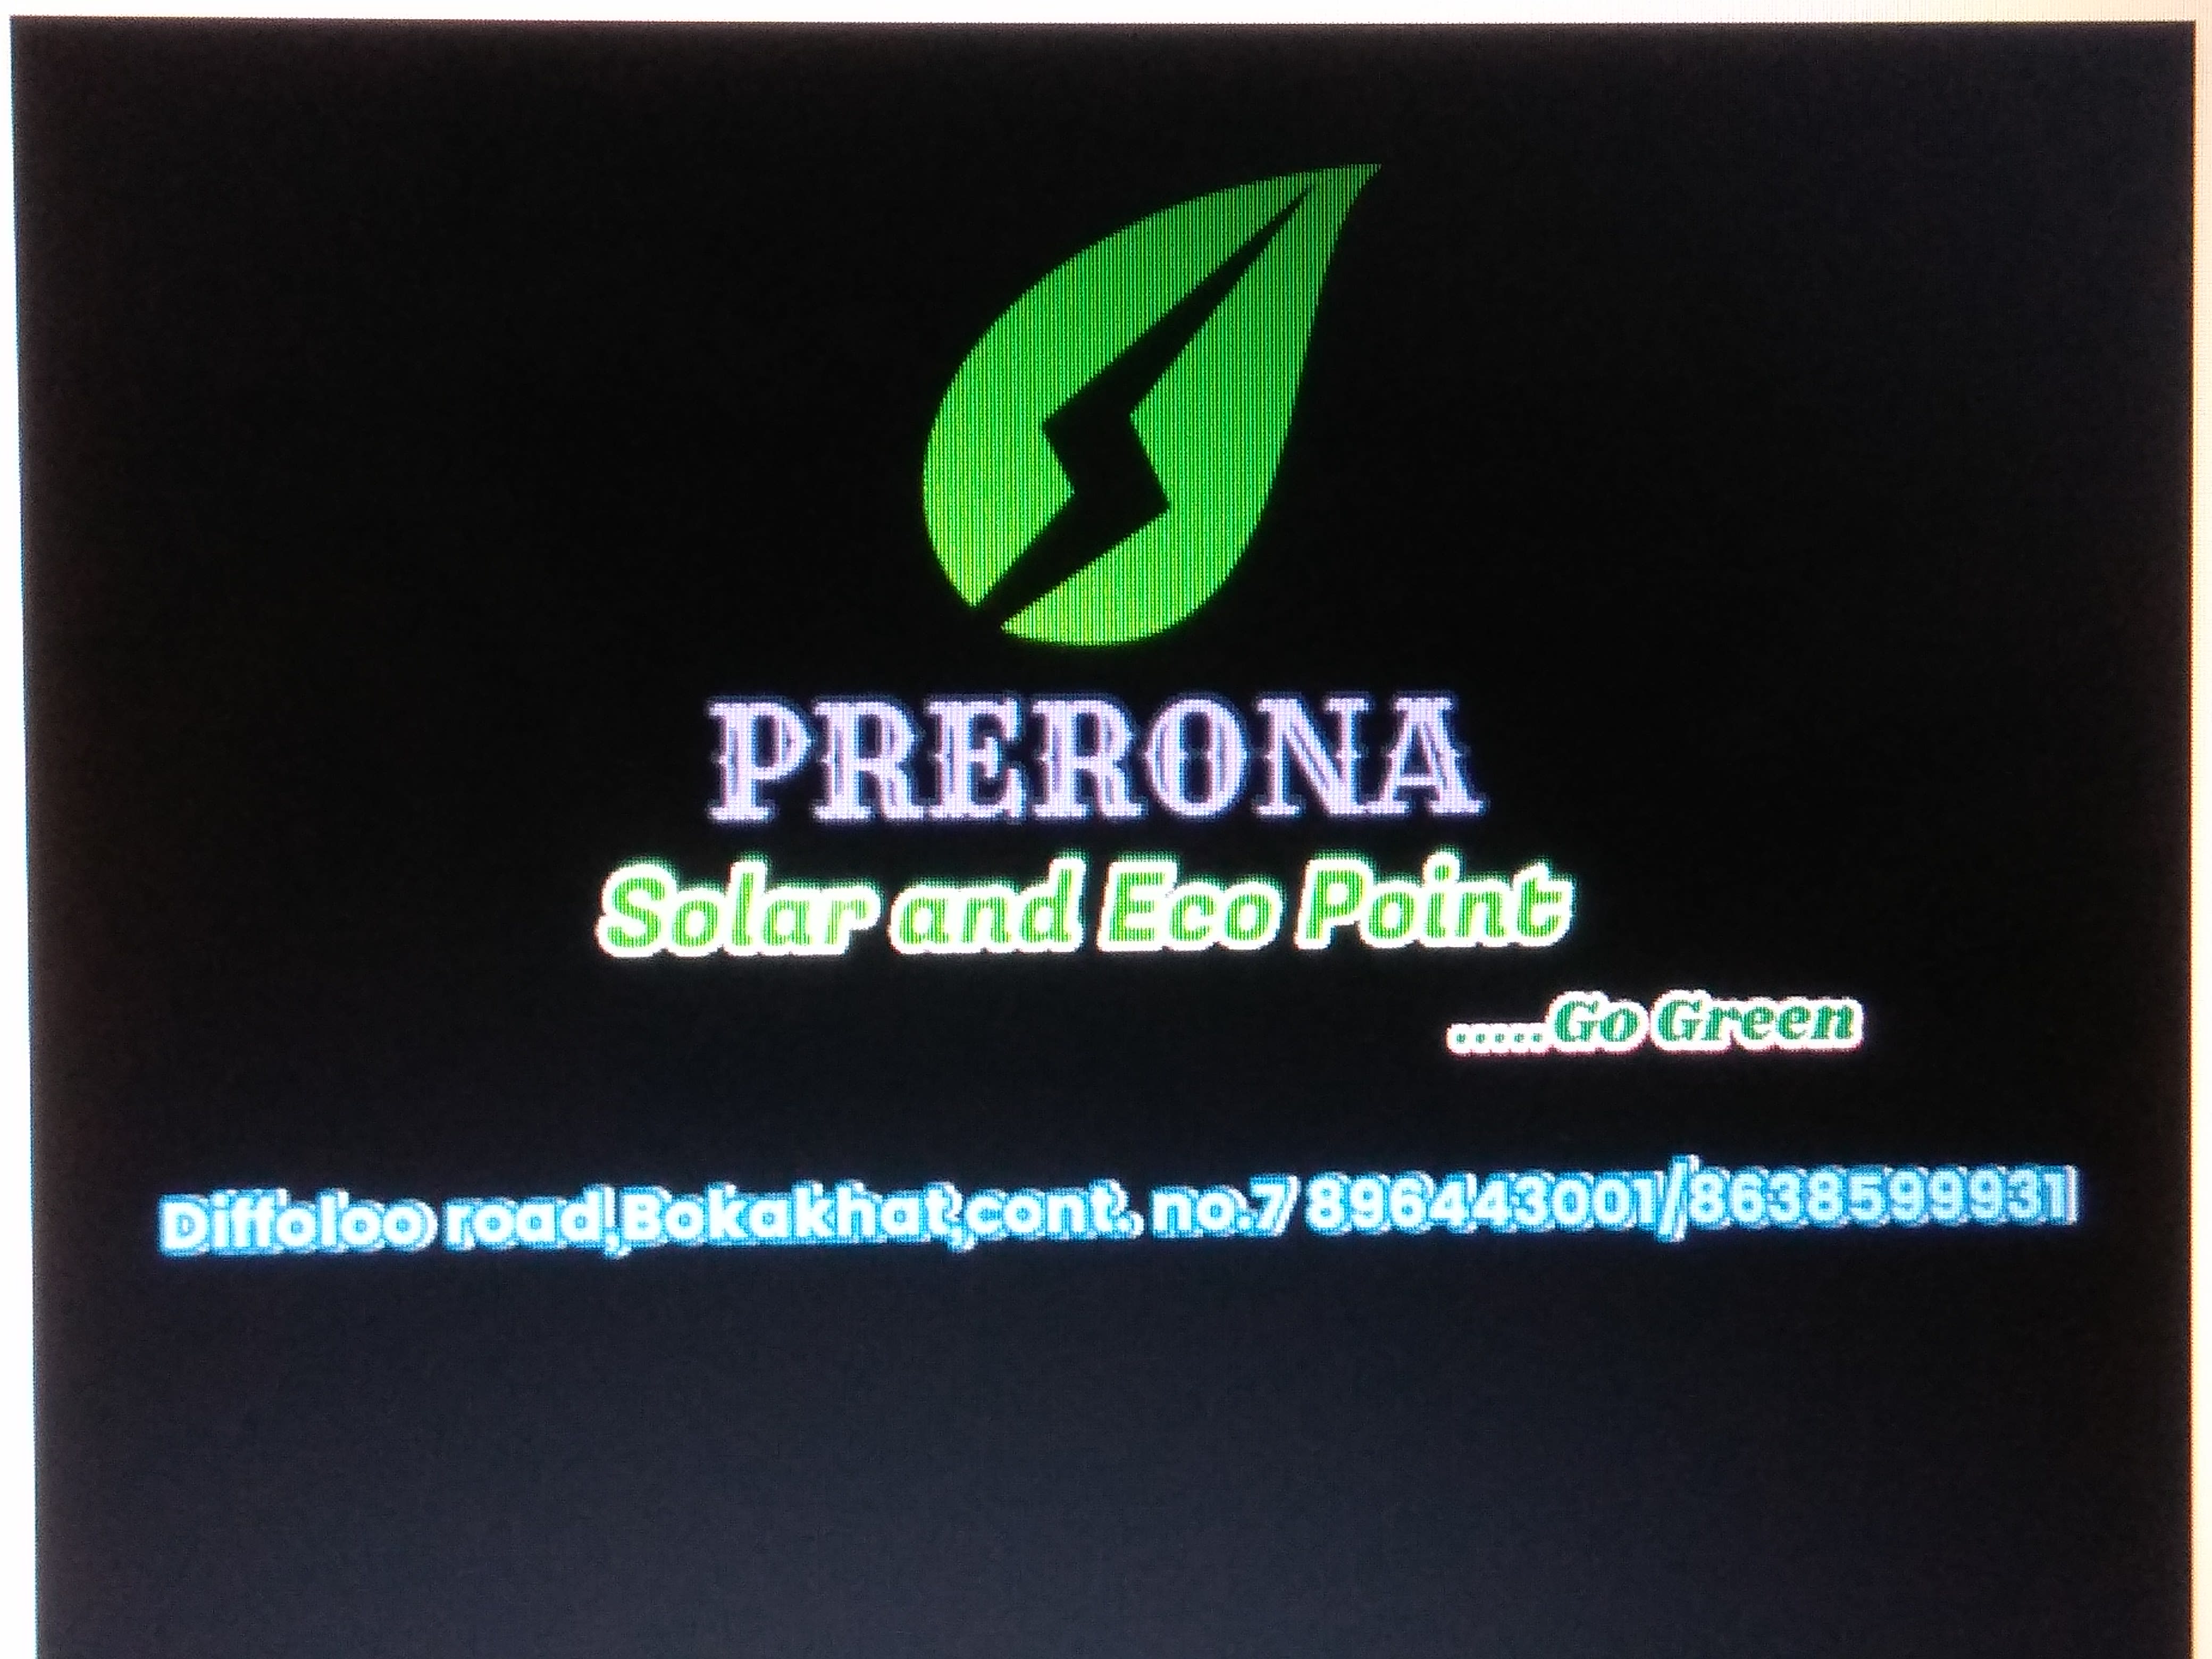 Prerona Solar and Eco Point